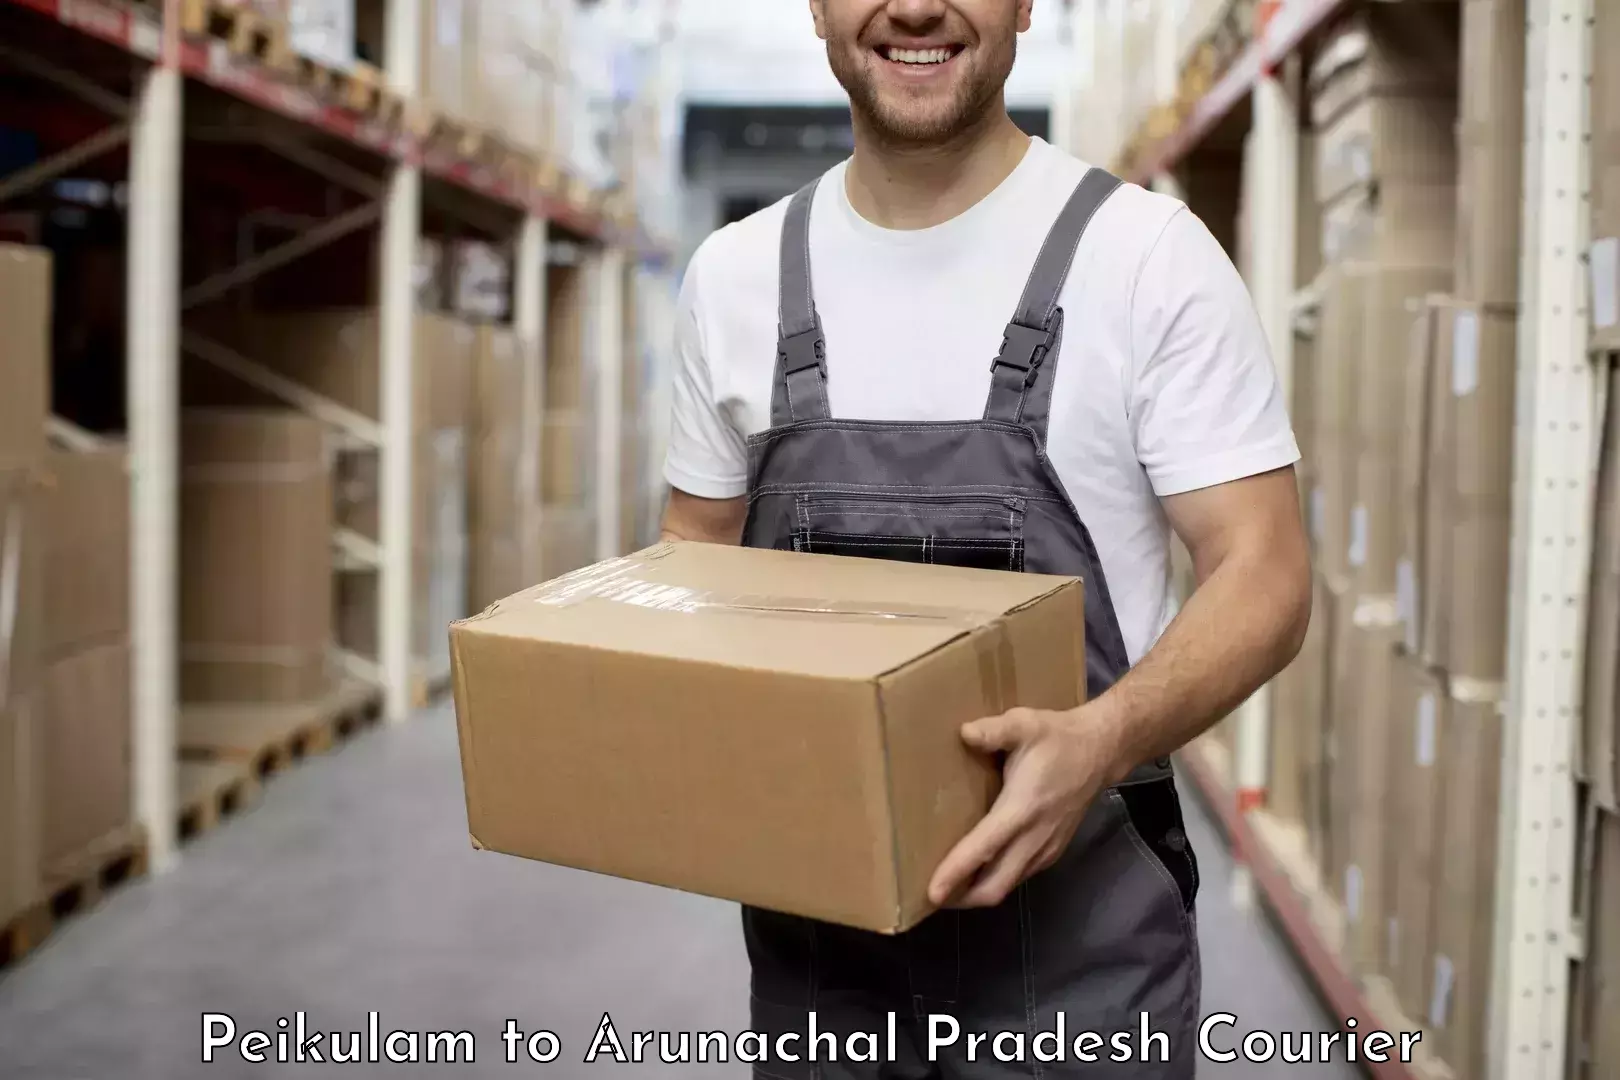 Reliable courier service Peikulam to Arunachal Pradesh